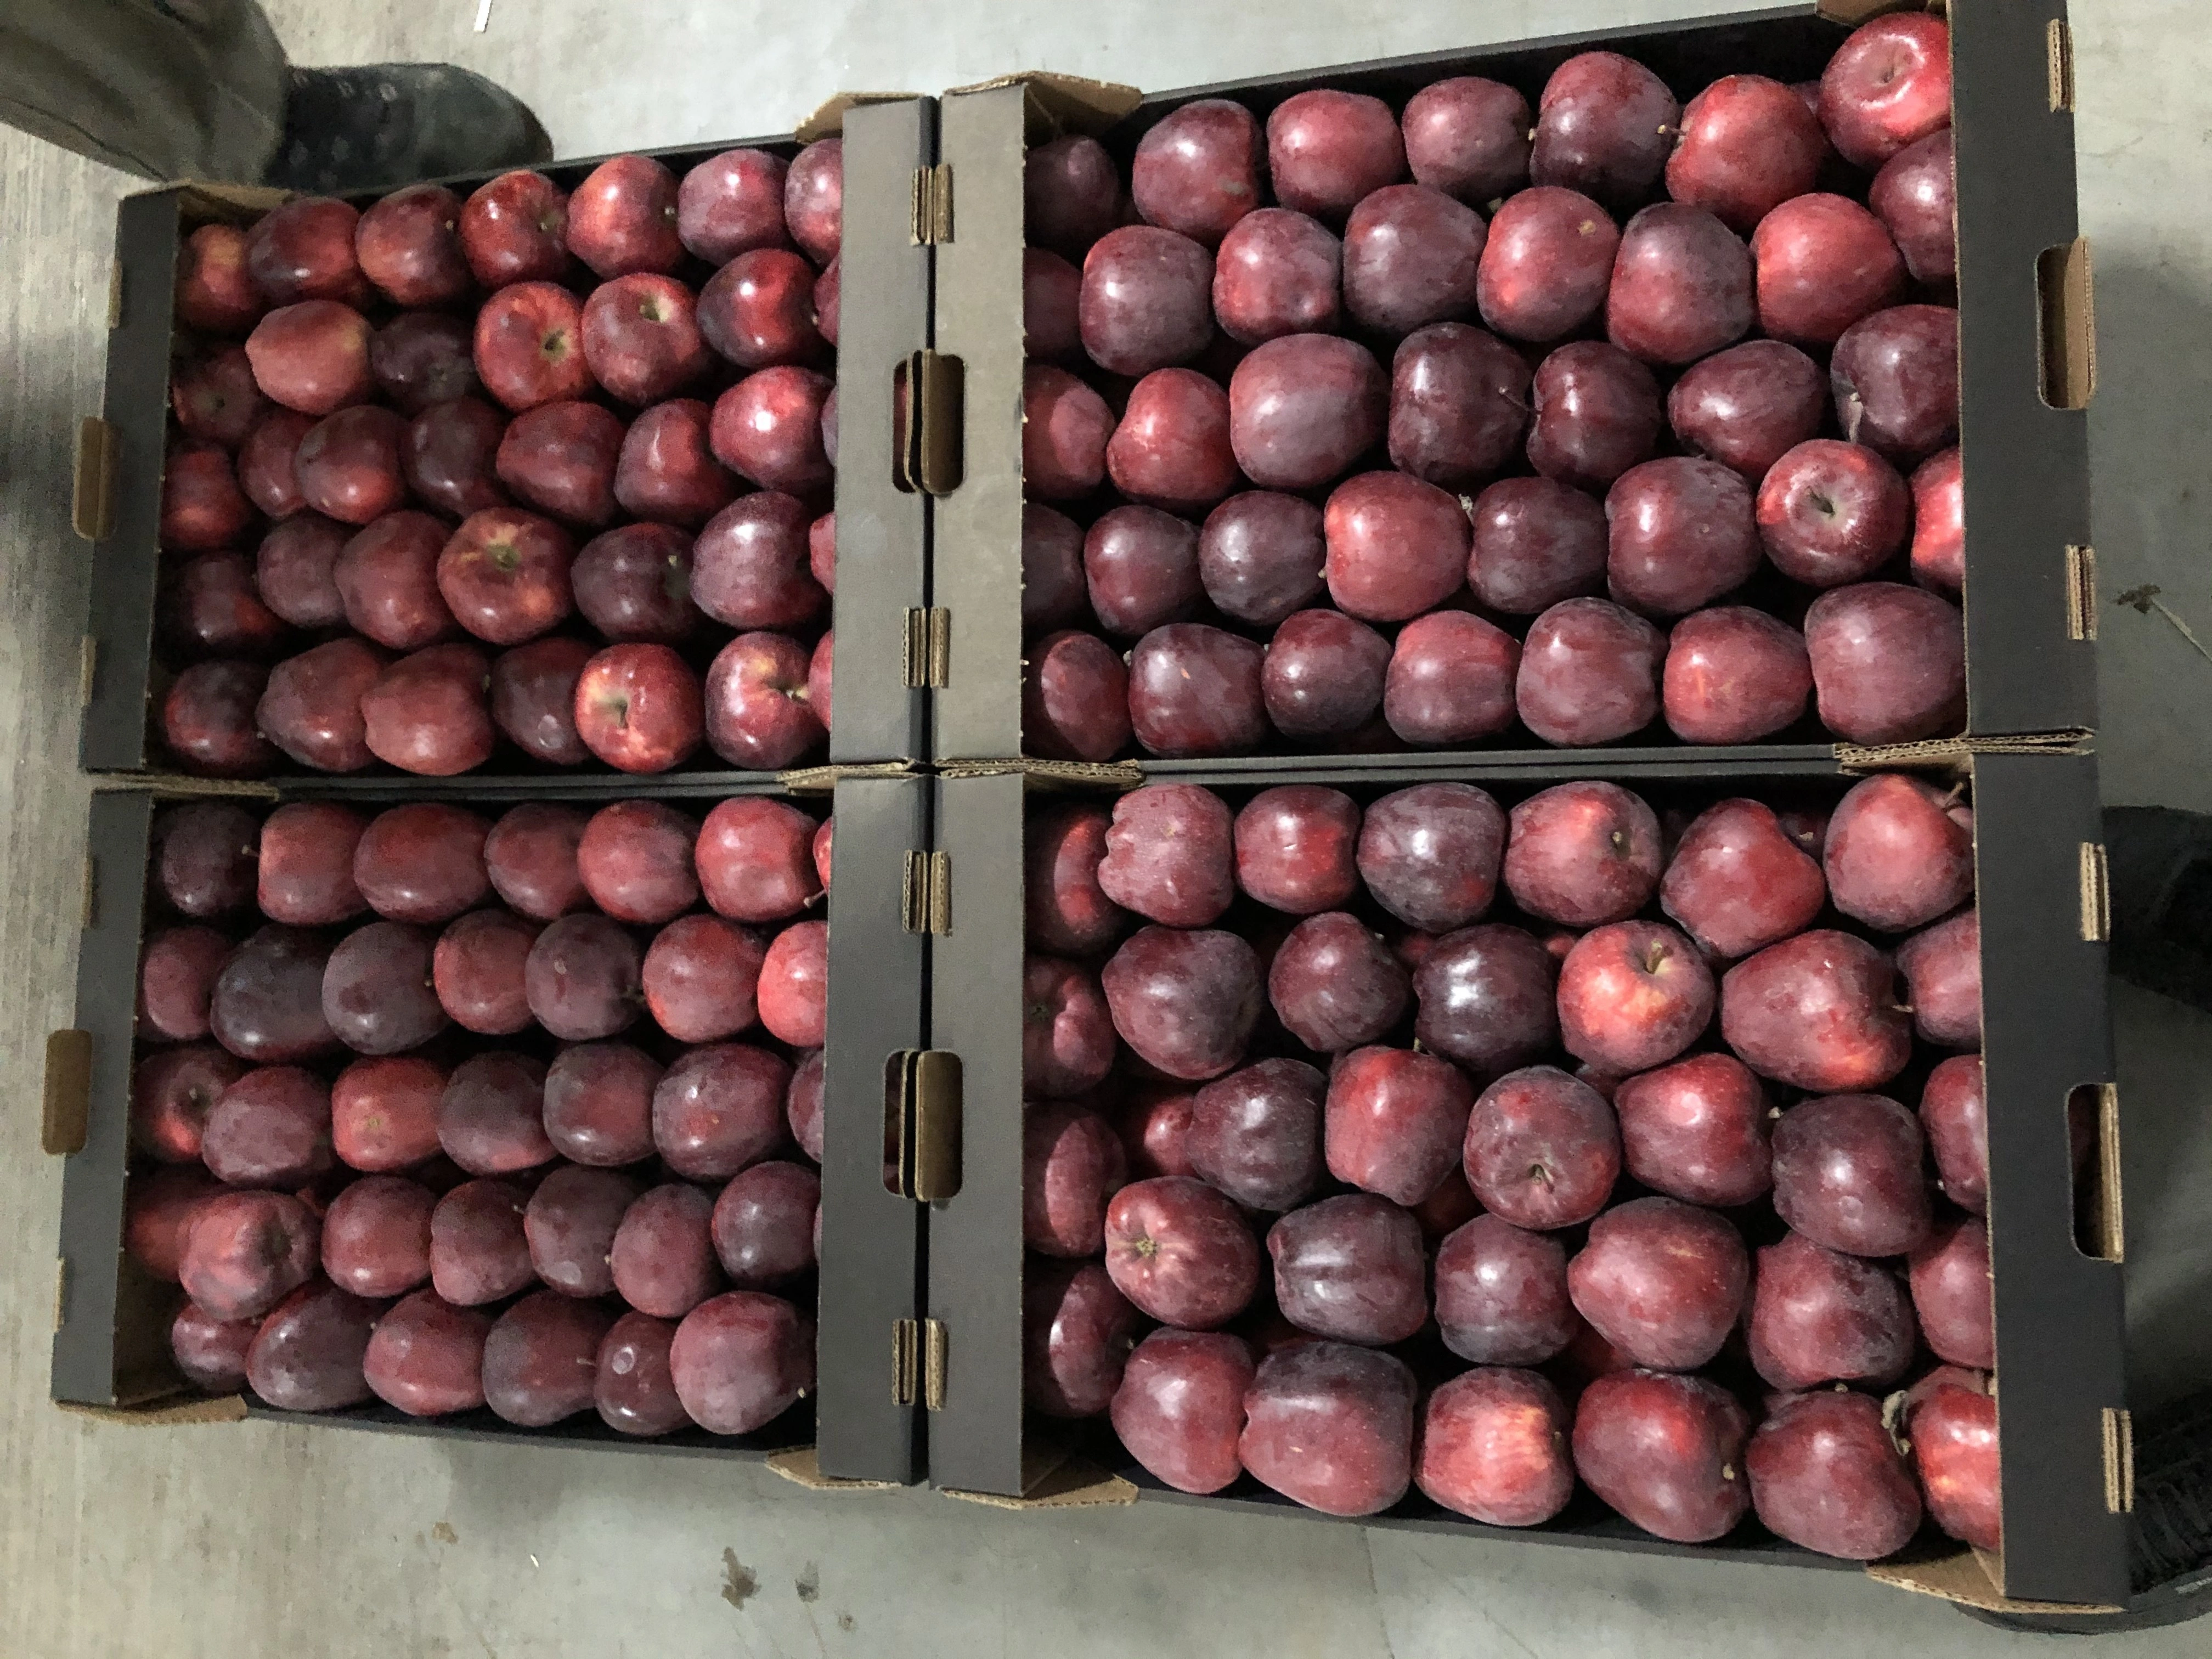 яблоки свежие  в Нальчике и Кабардино-Балкарской республике 4